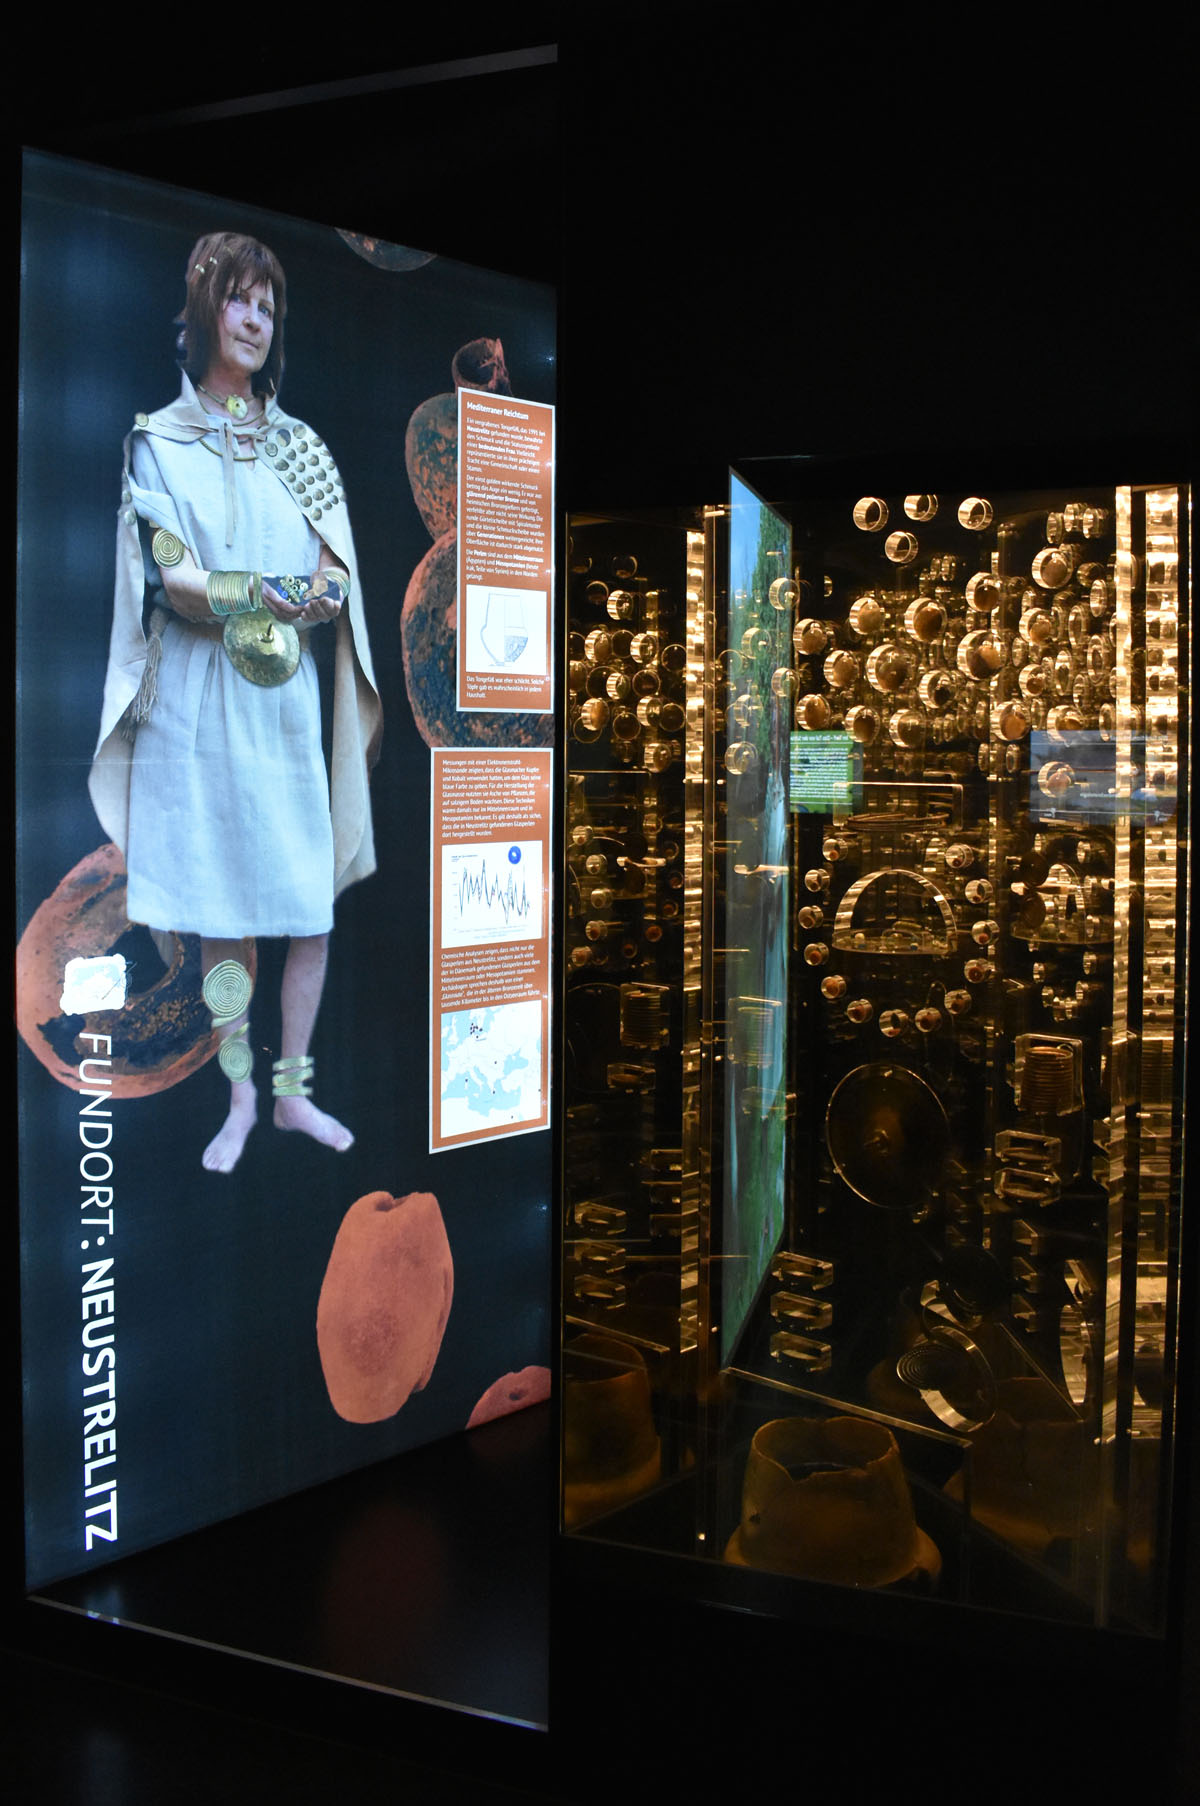 Abb. 2020_23: Die "Dame von Neustrelitz" zeigte ihre Macht mit mehreren Kilogramm feinsten Bronzeschmucks, Bernsteinperlen und Glasperlen. Die Glasperlen waren außerordentlich wertvolle Importstücke aus dem Mittelmeerraum.